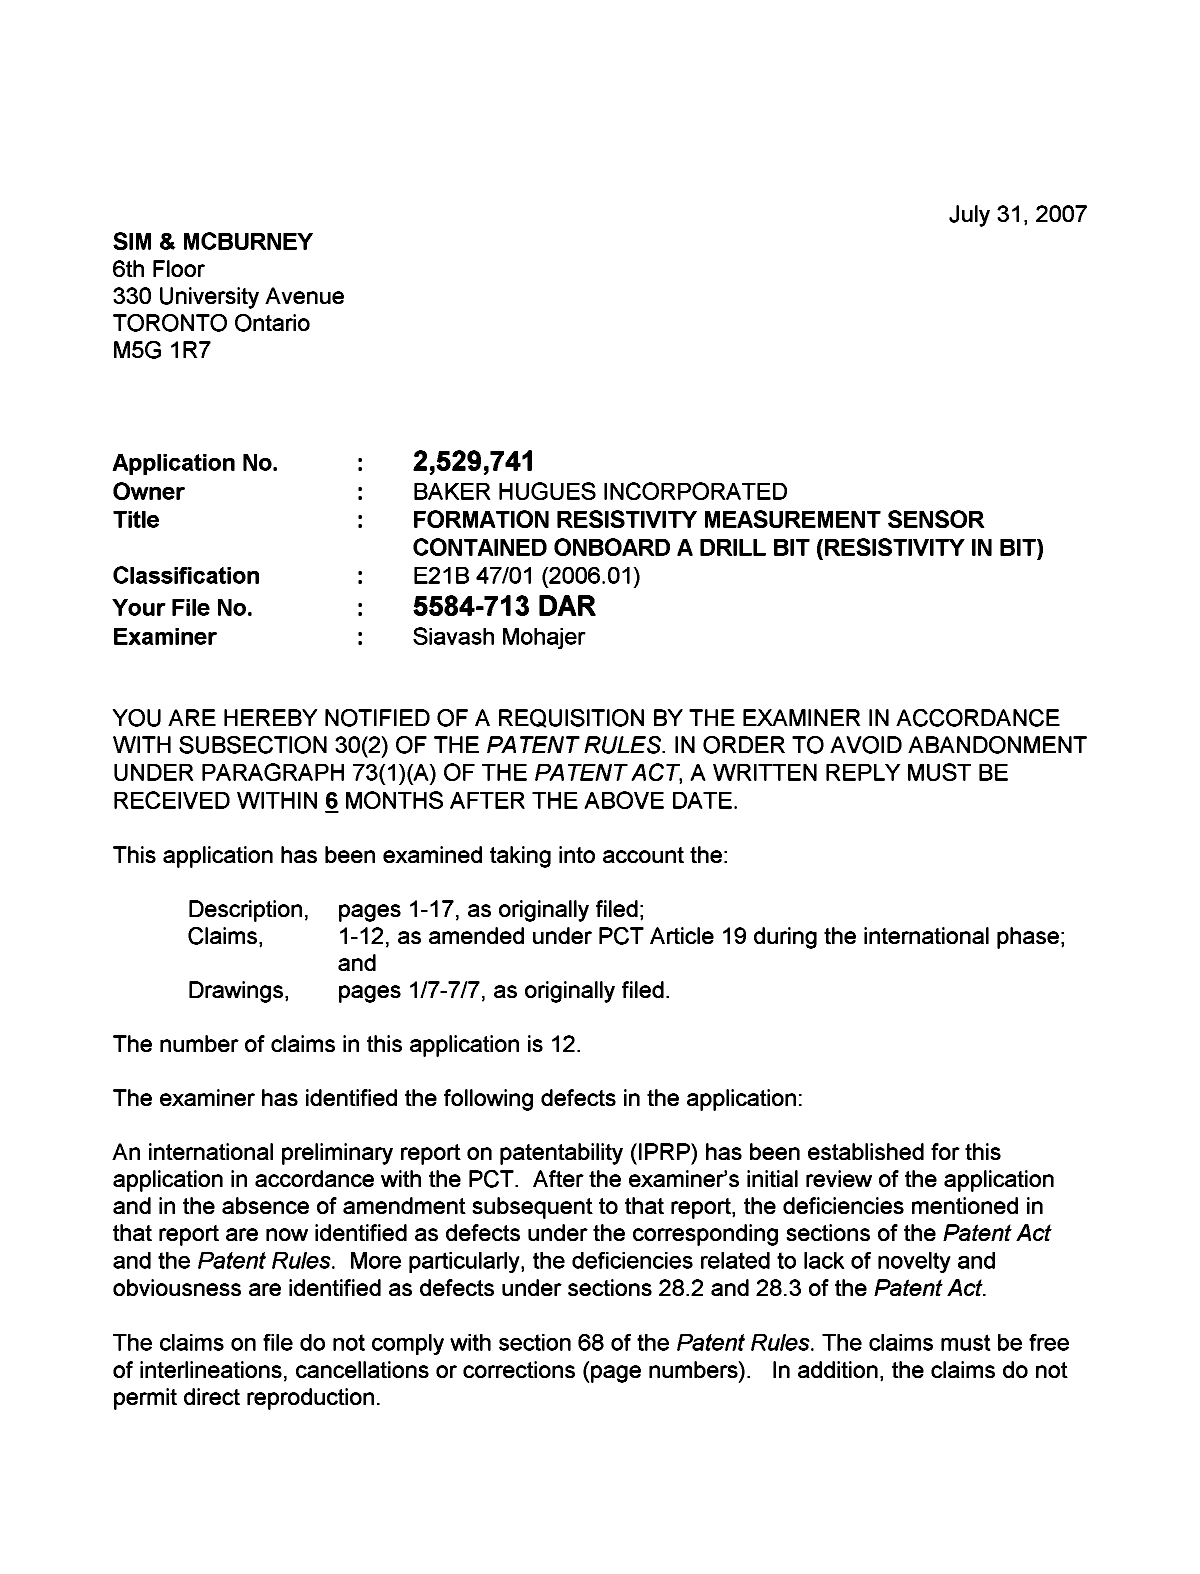 Document de brevet canadien 2529741. Poursuite-Amendment 20070731. Image 1 de 2